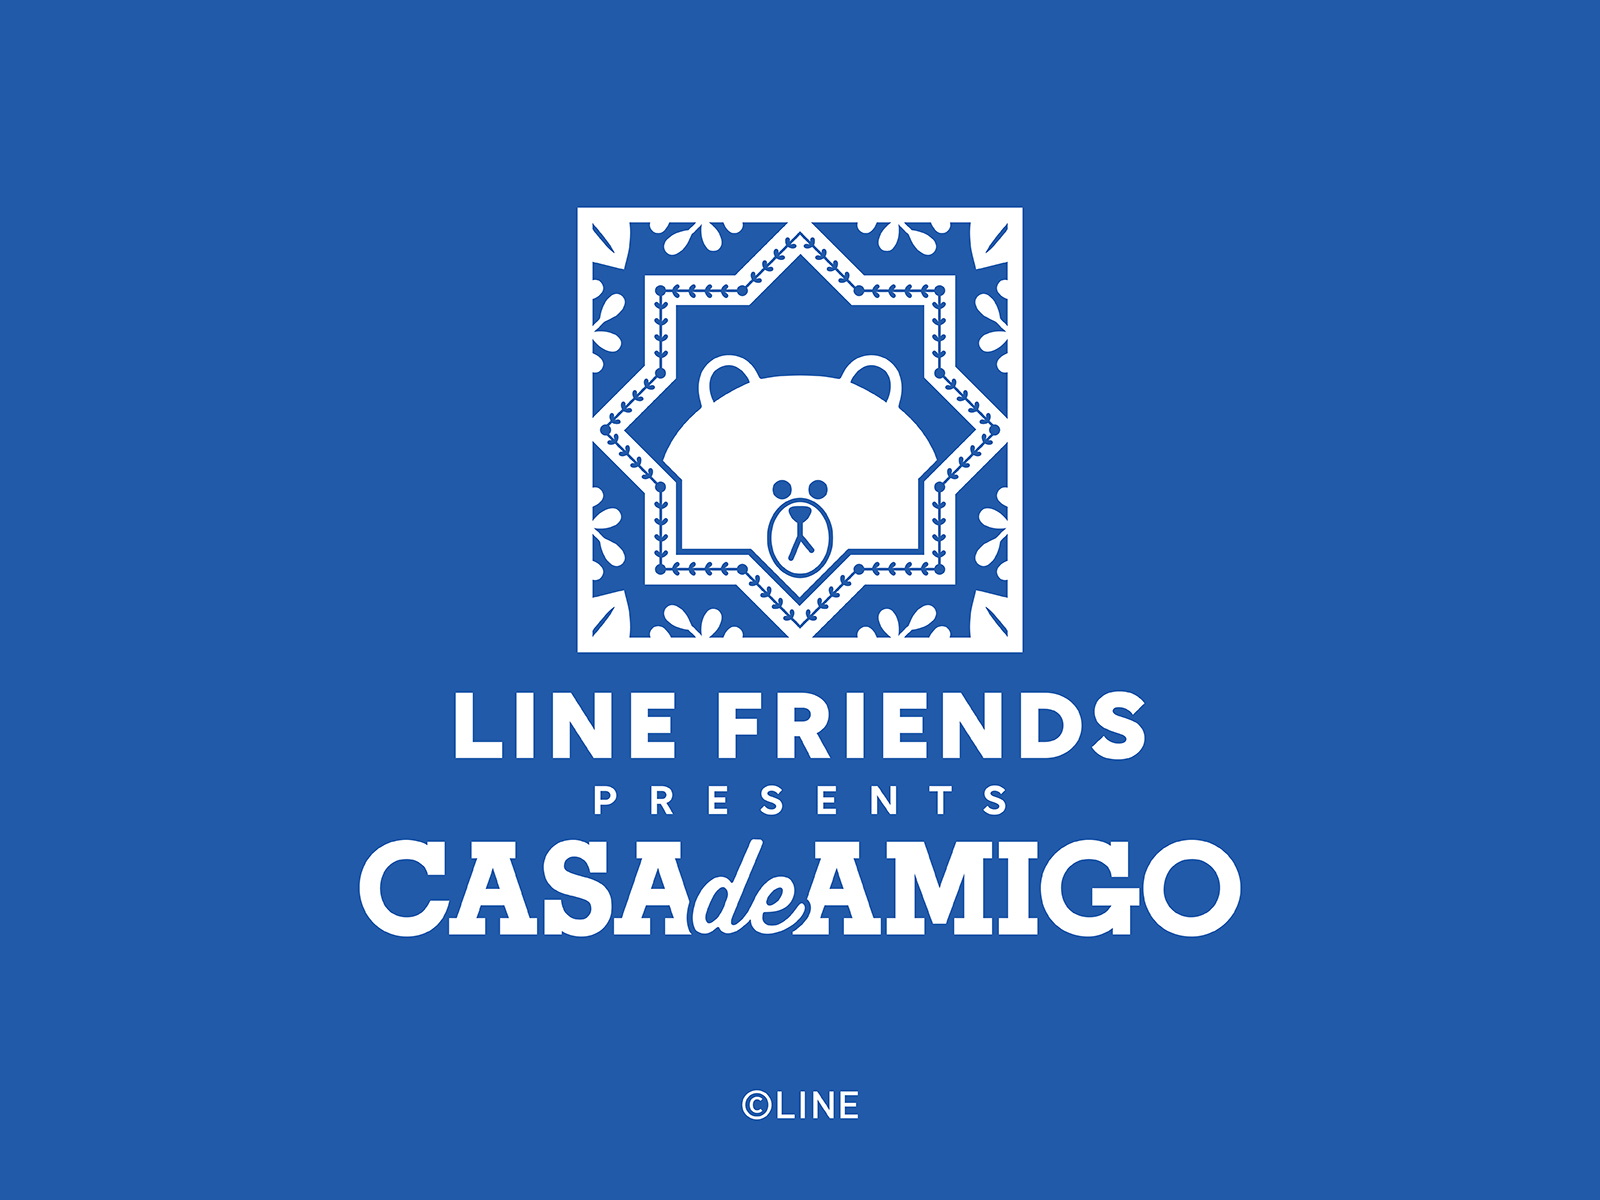 LINE FRIENDS presents CASA DE AMIGO - Lisboeta Macau